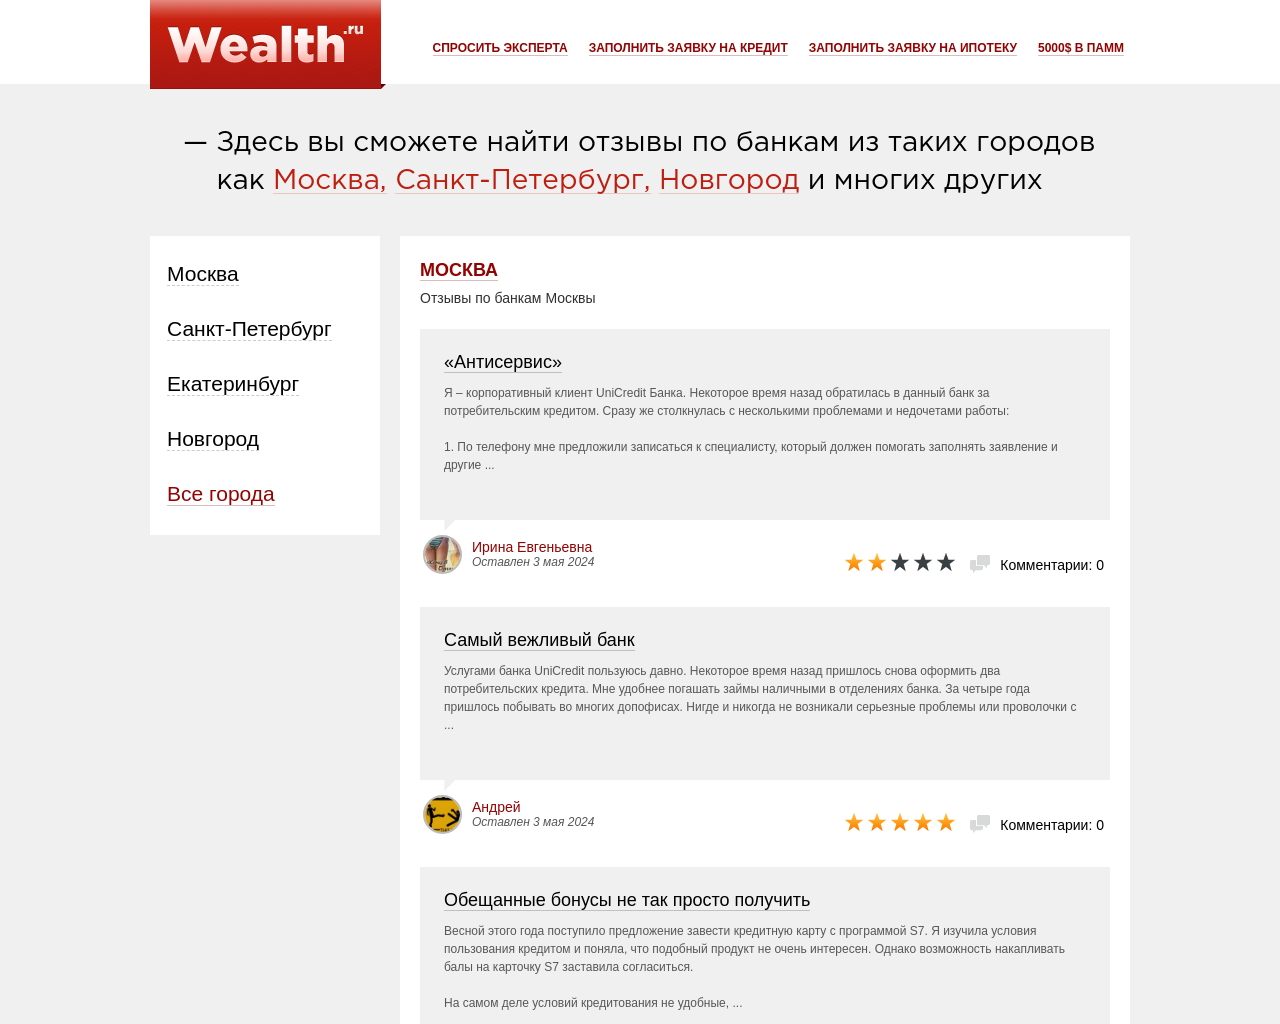 wealth.ru